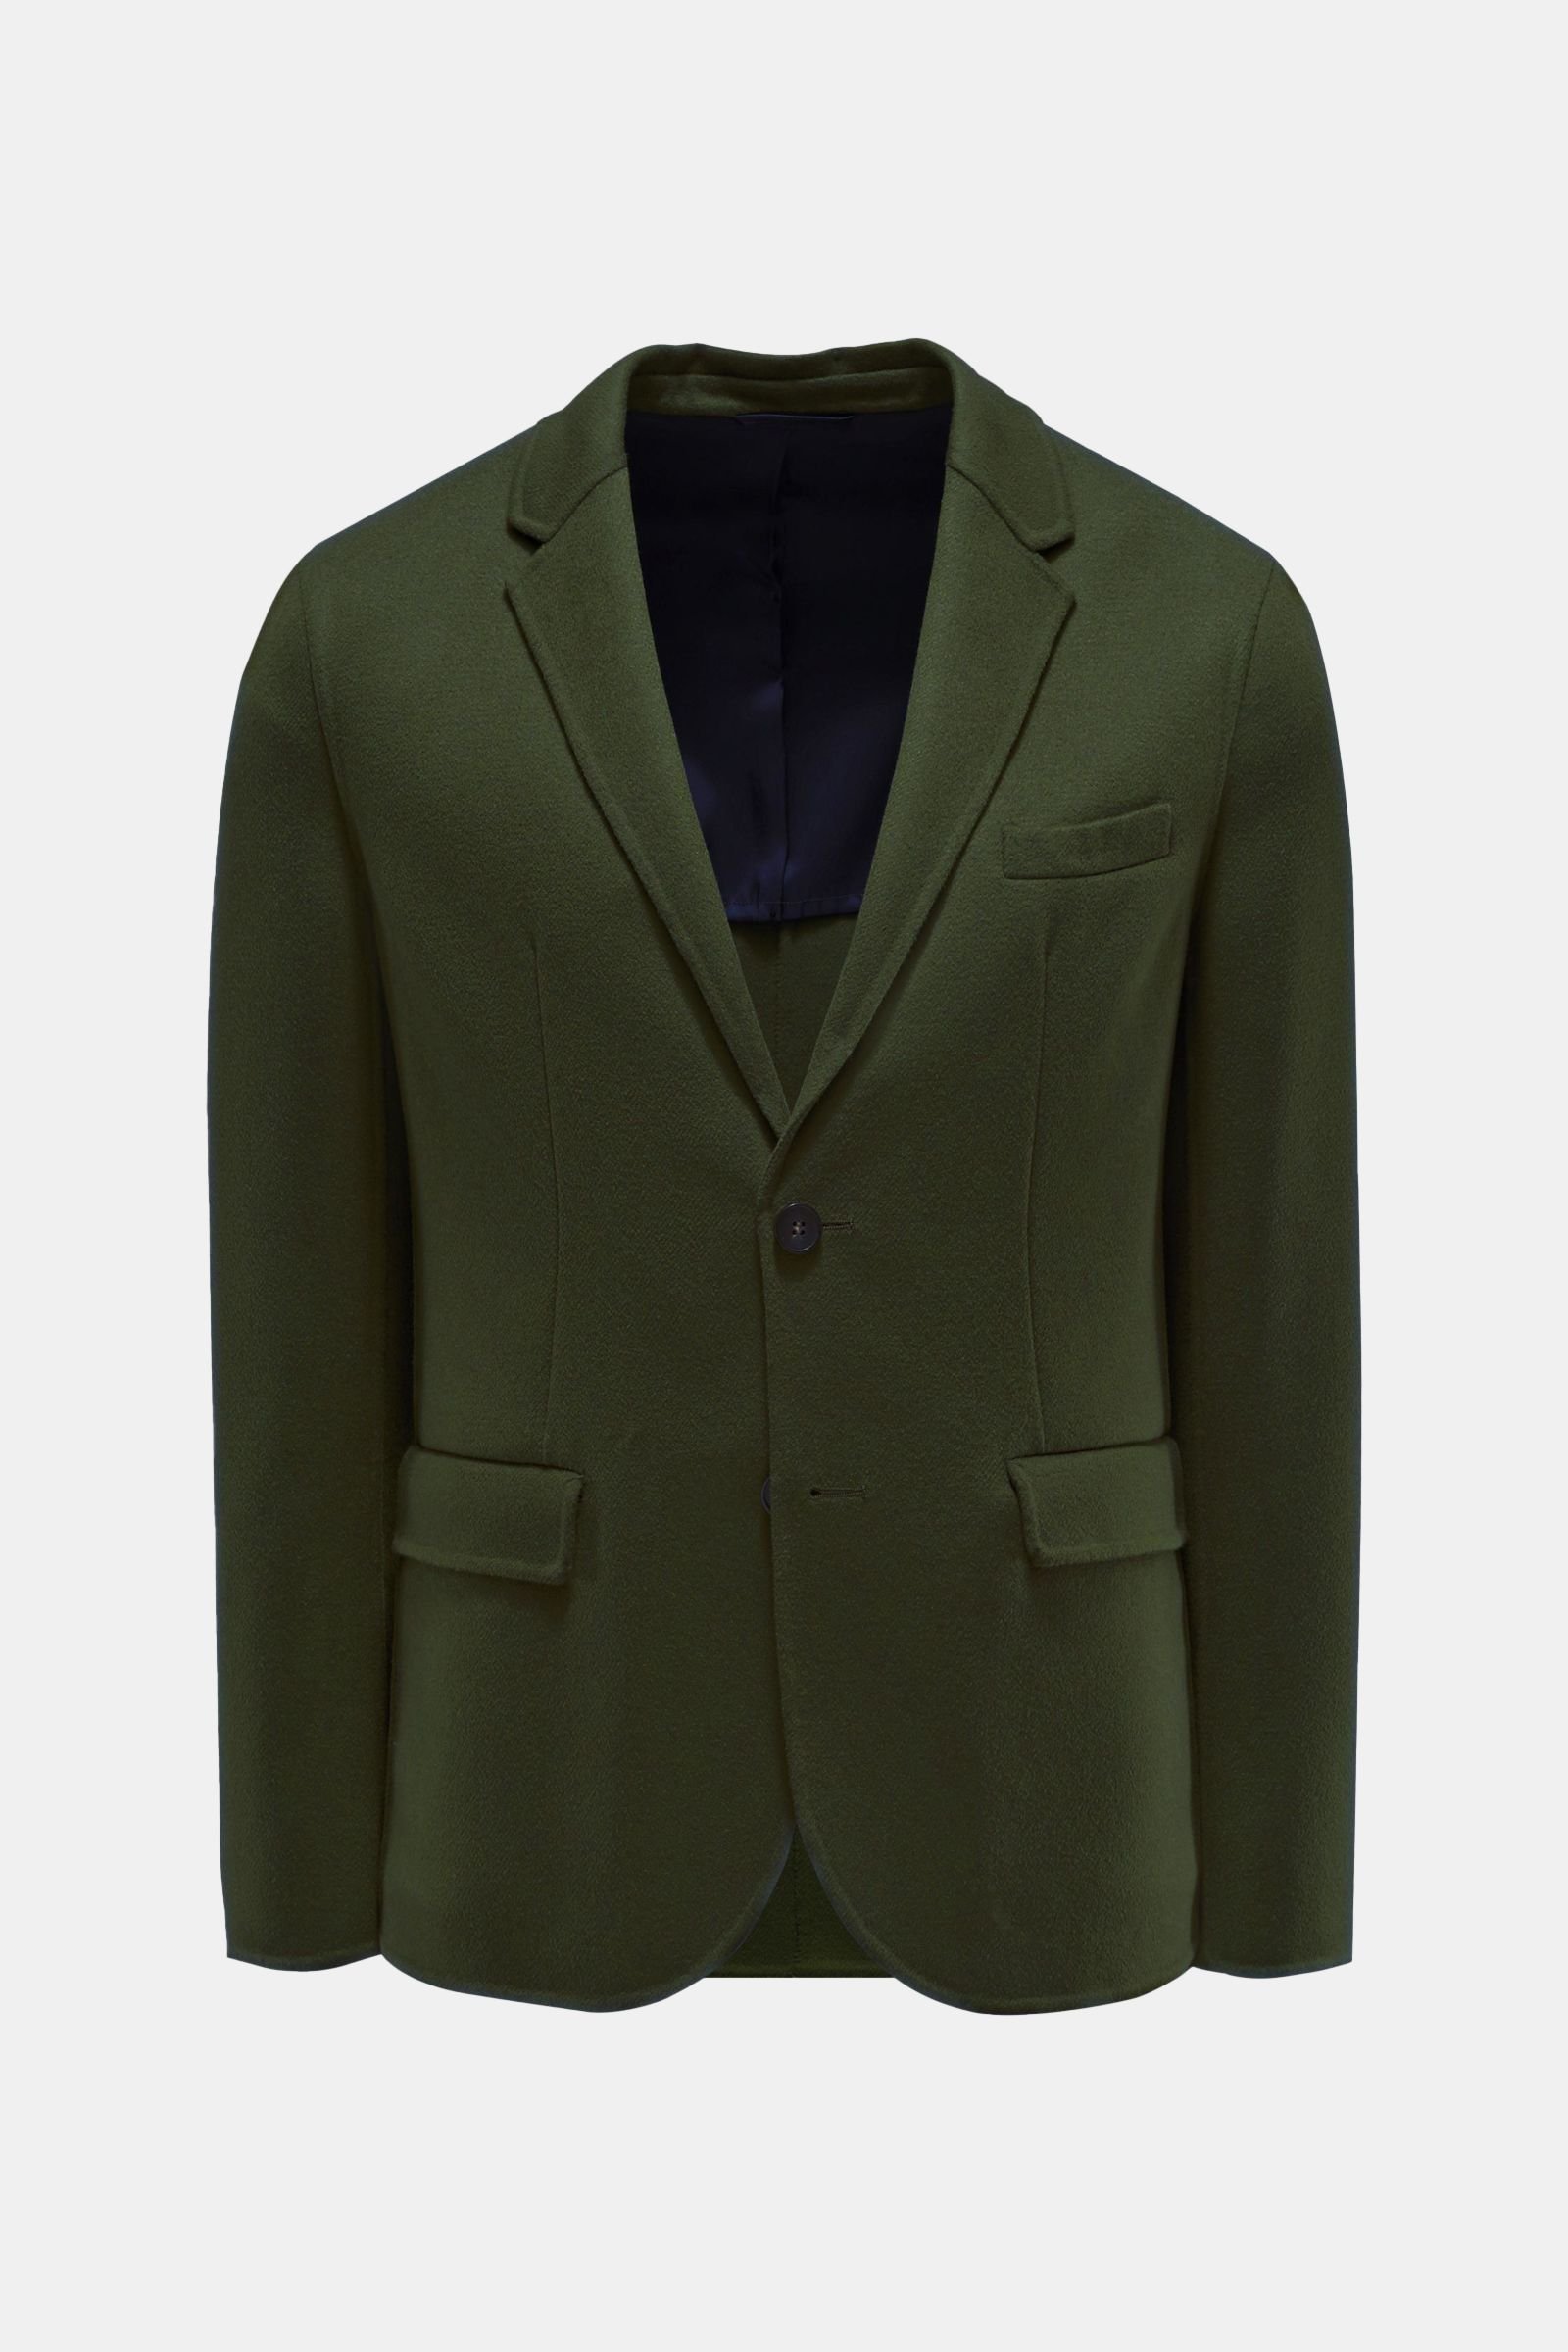 Smart-casual jacket 'Mells Luxe', dark green